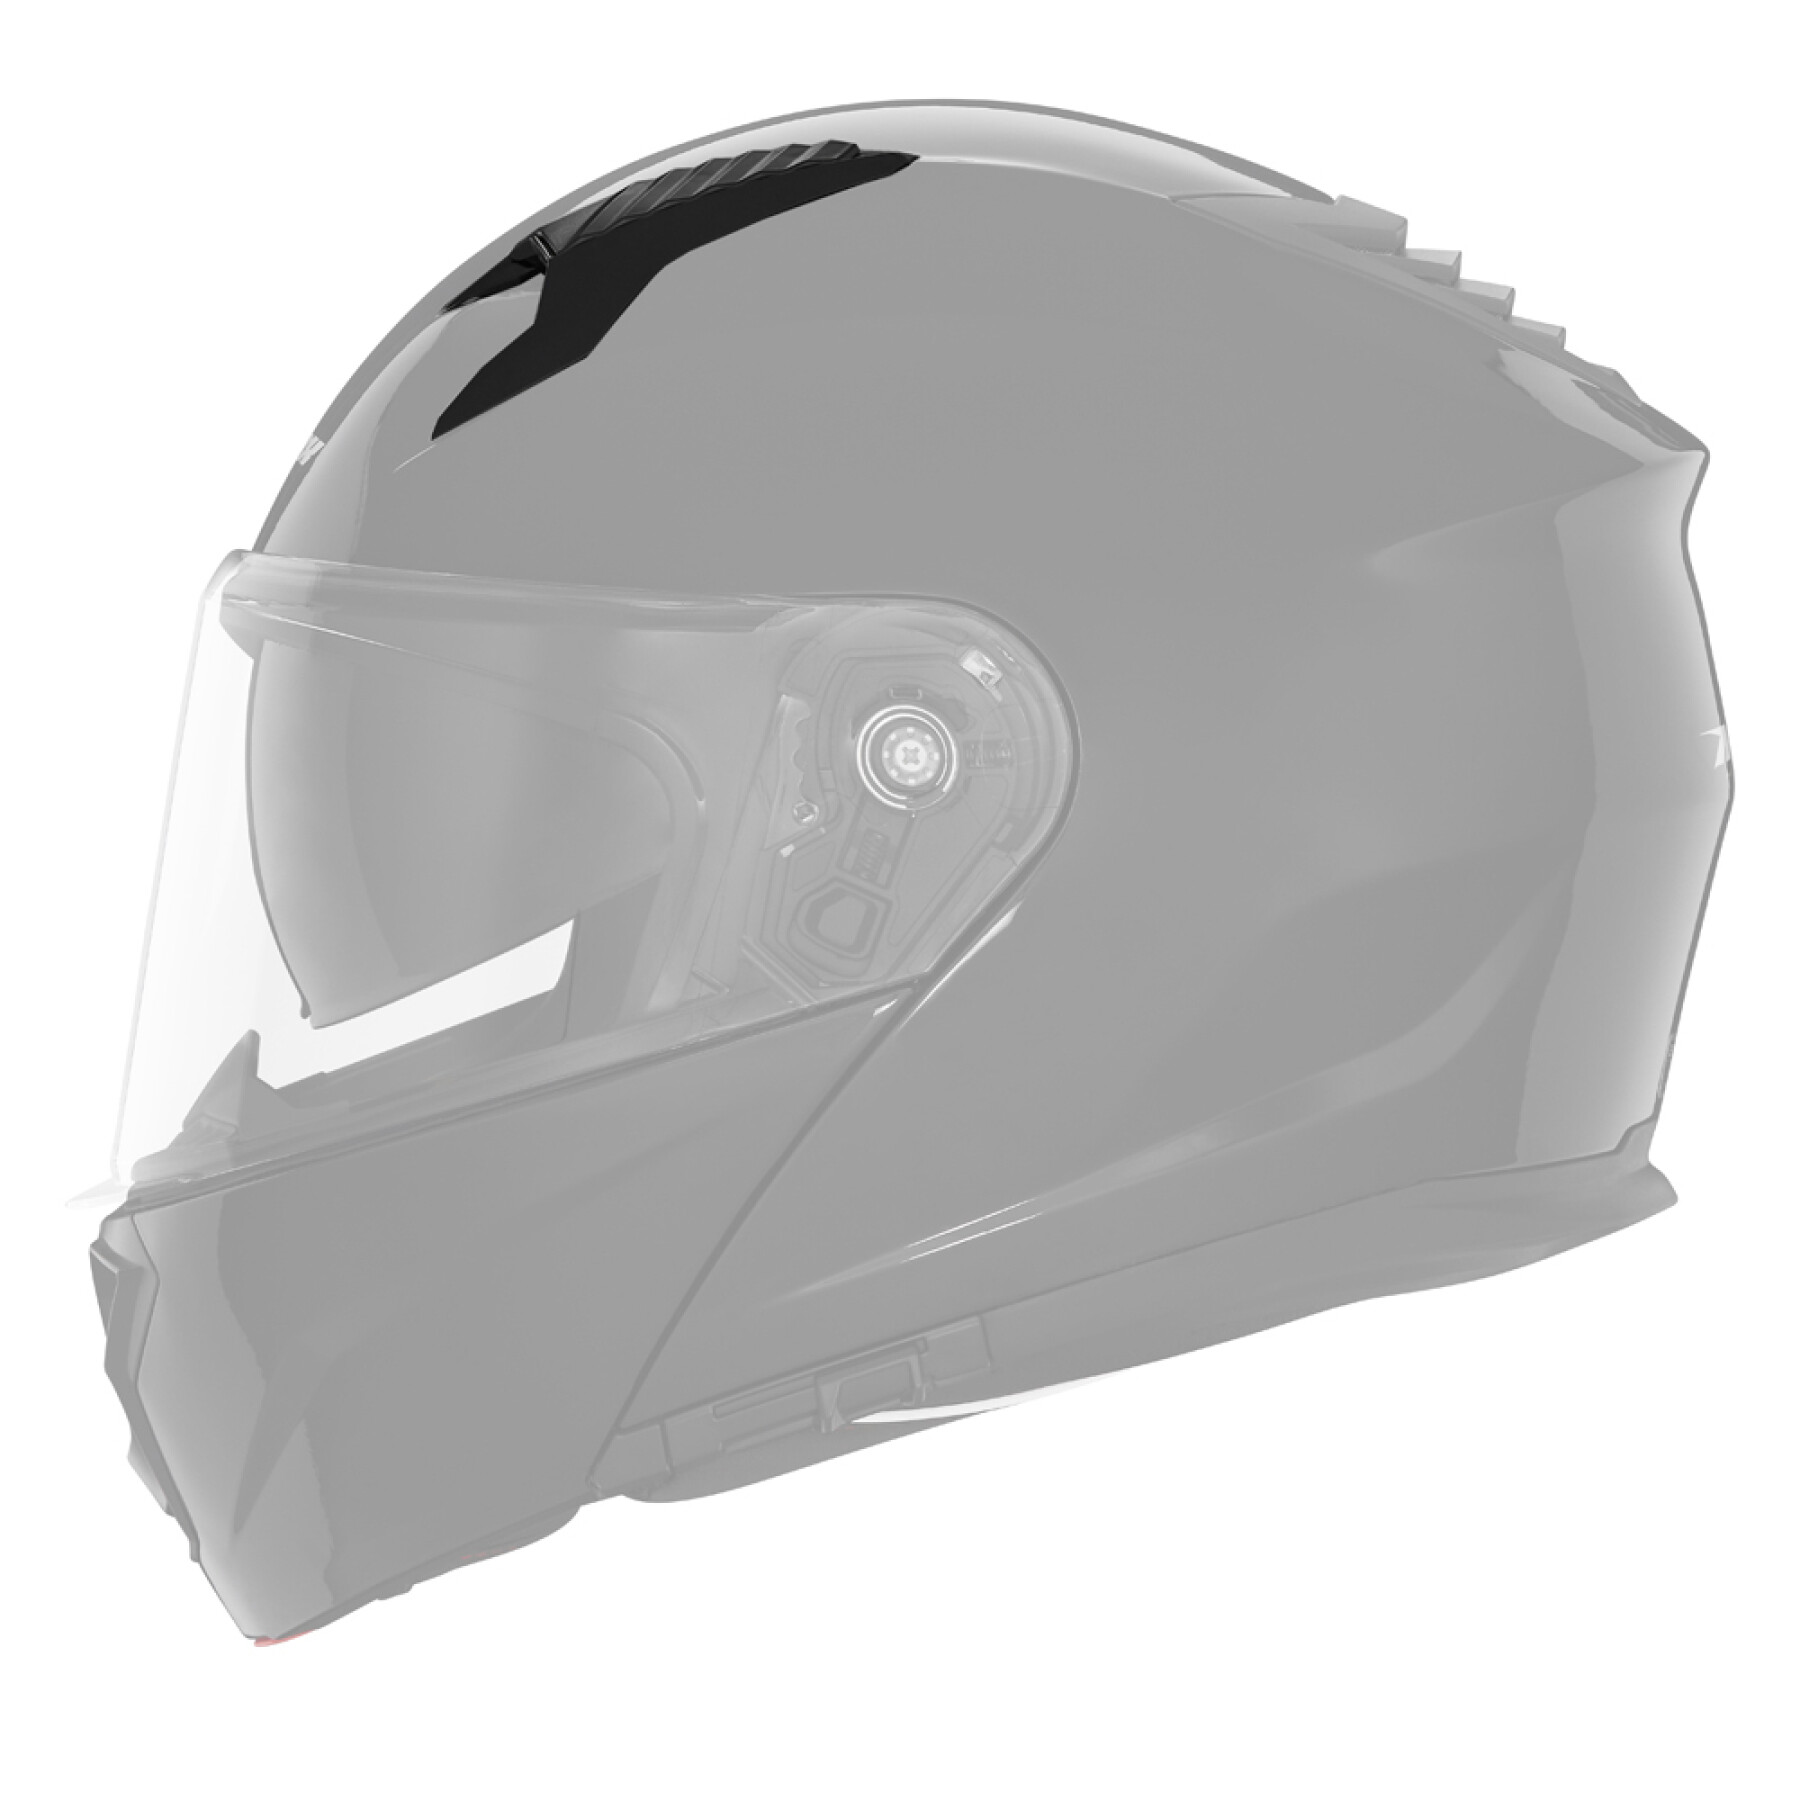 Ventilación superior del casco de moto Nox N 968